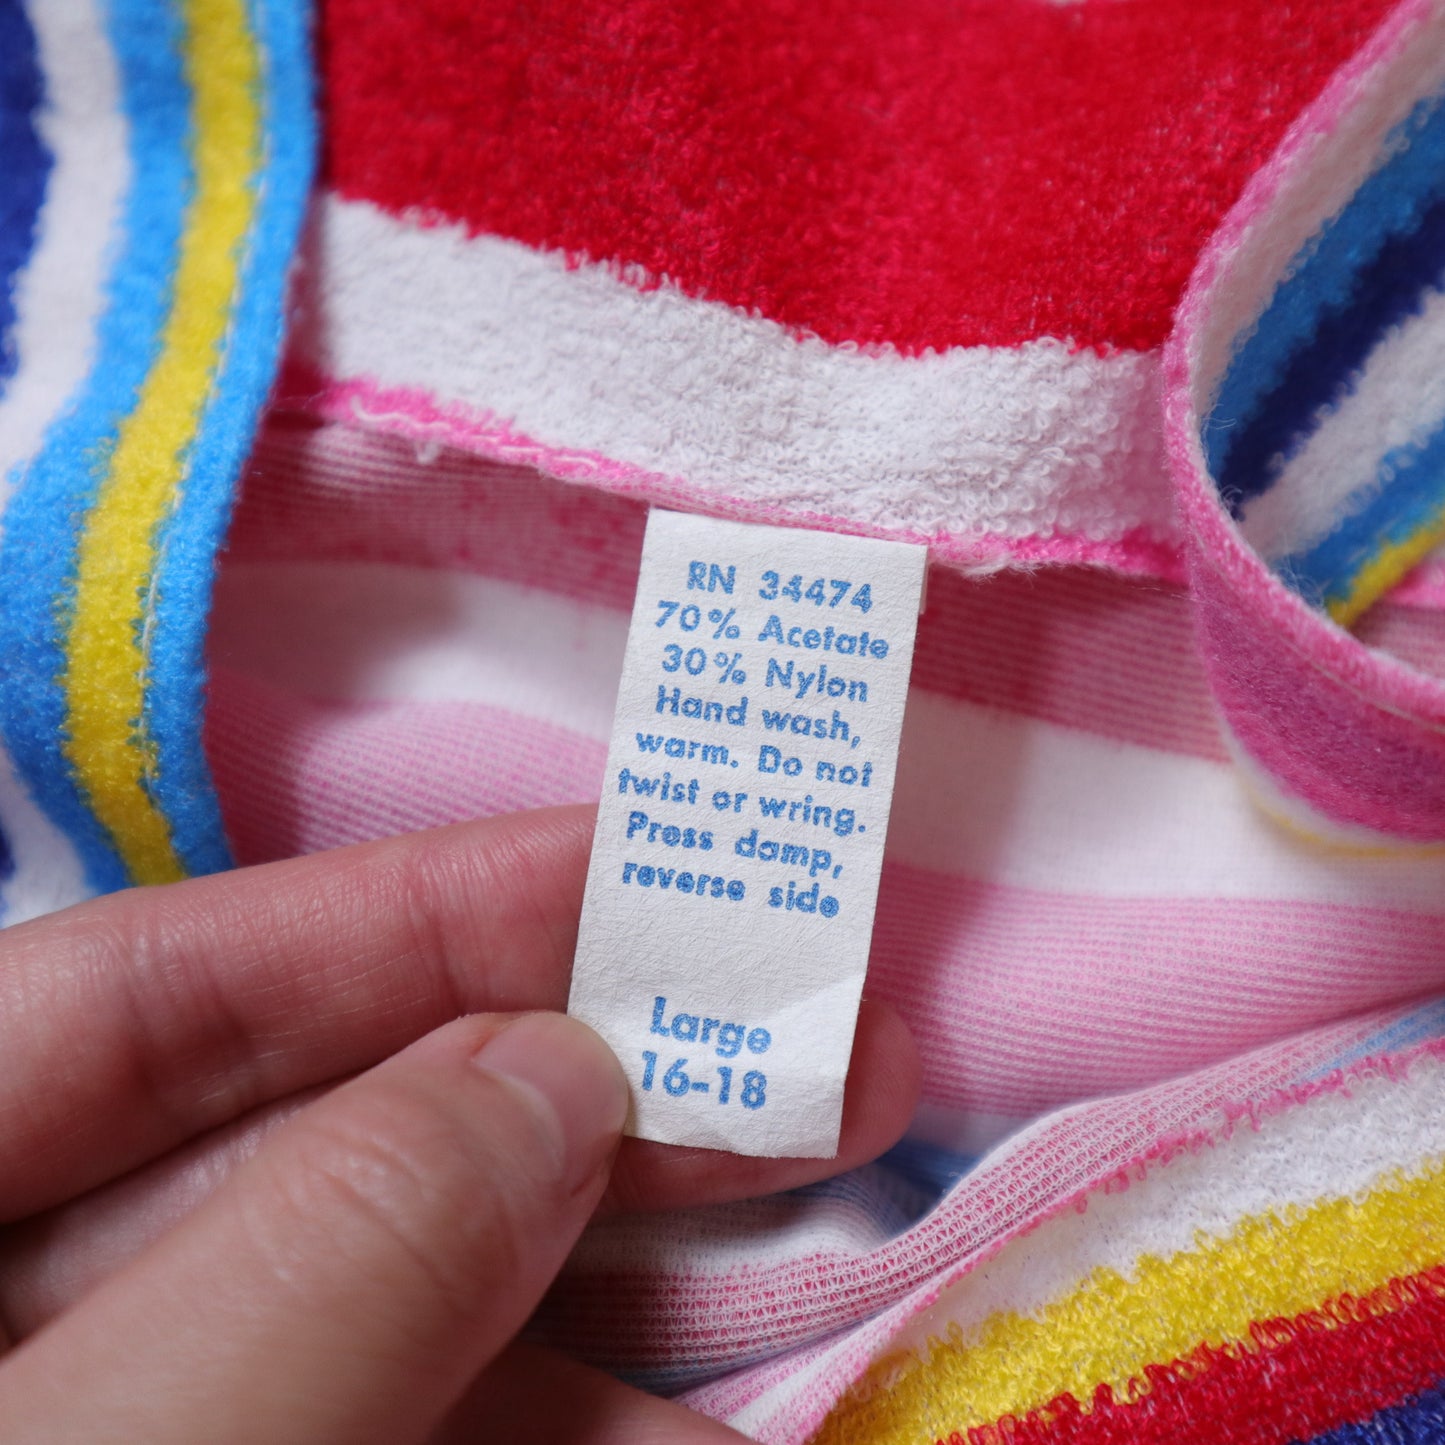 70-80s 彩色條紋毛巾布背心洋裝